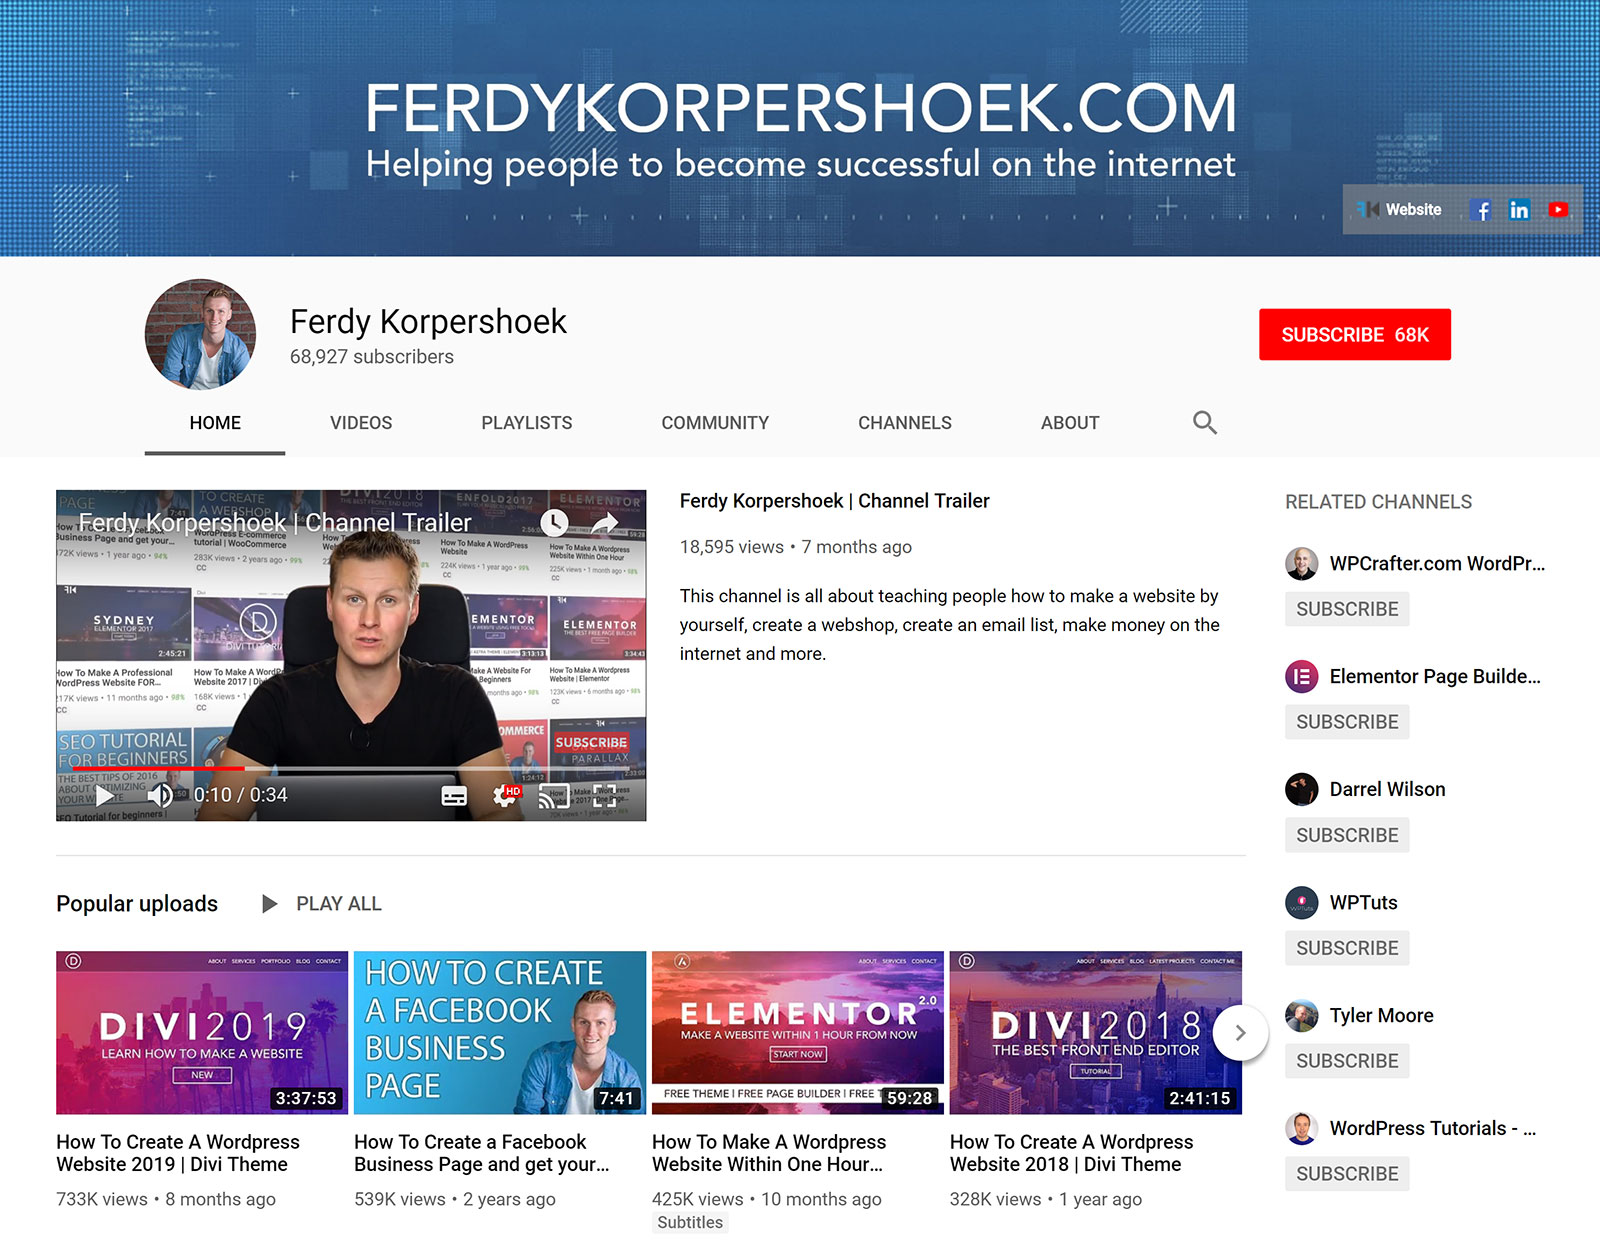 Ferdy Korpershoek - YouTube Channel